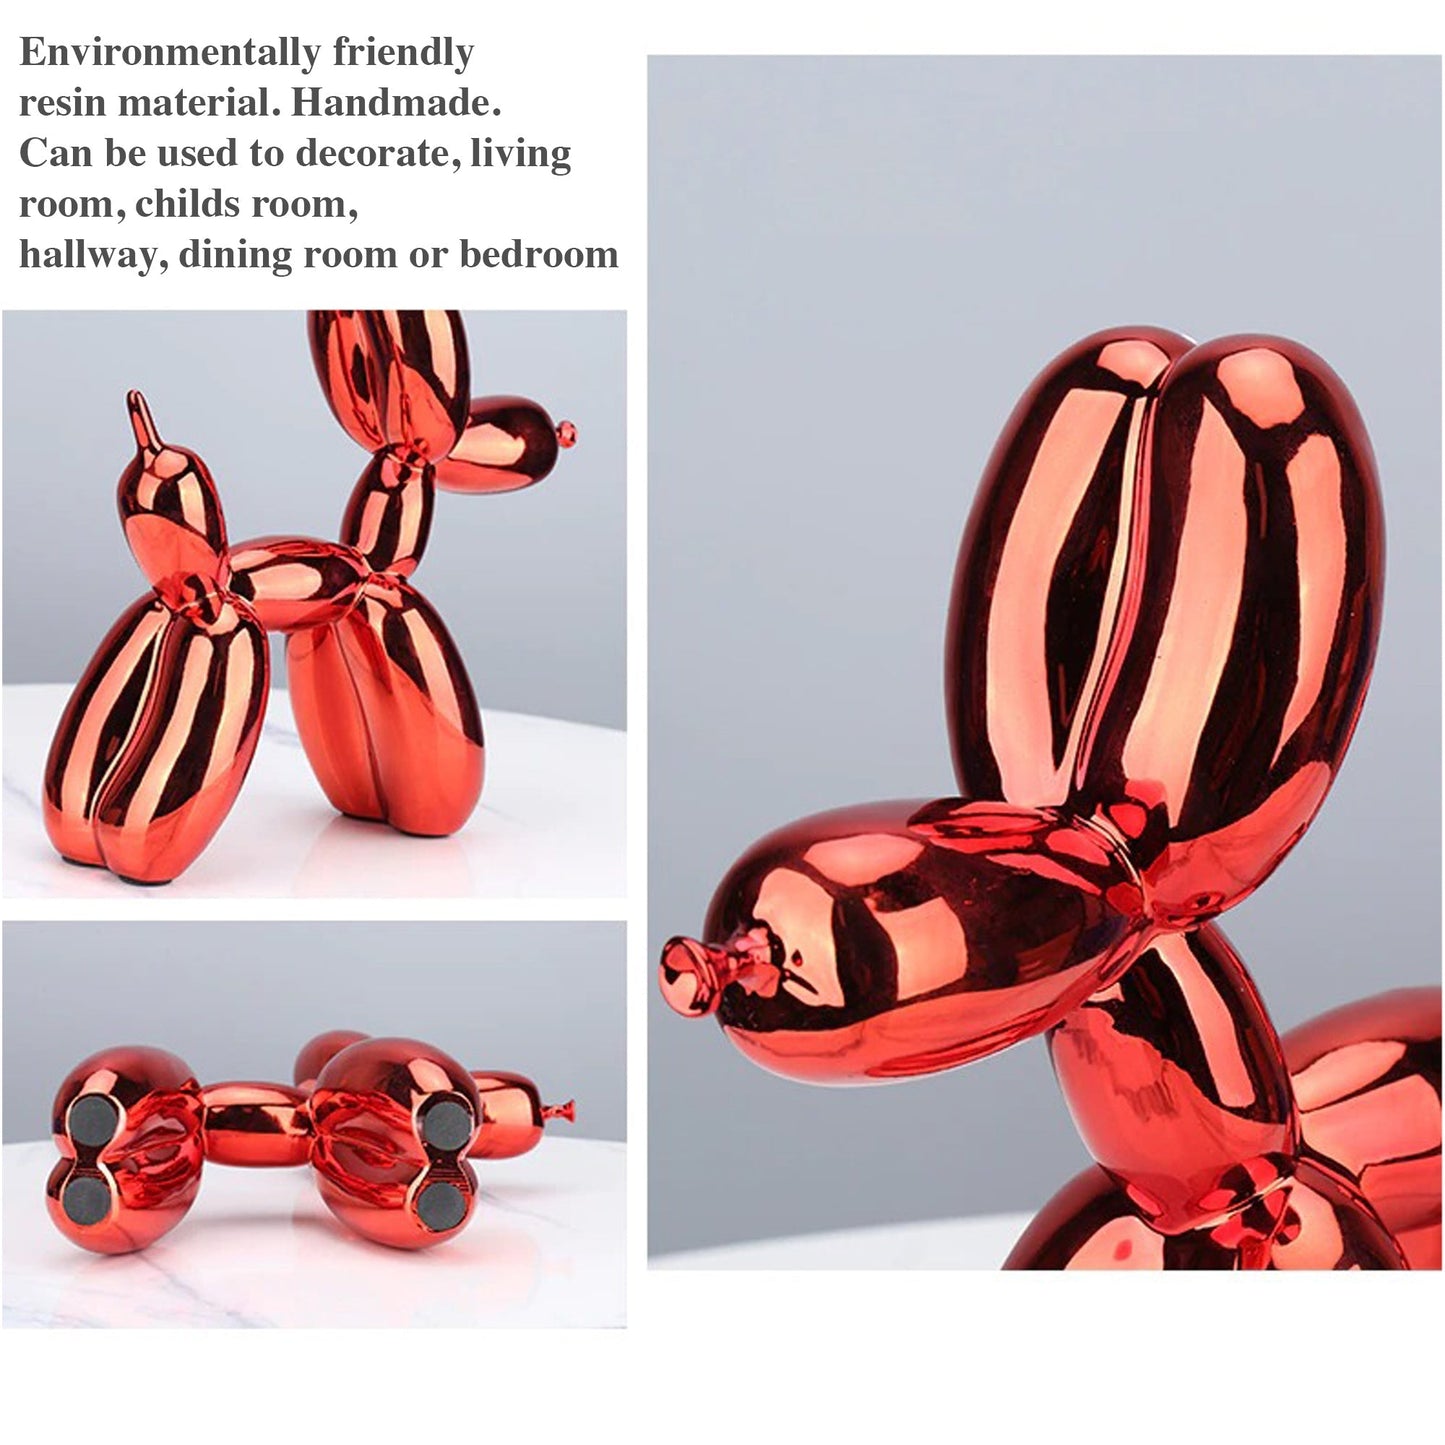 Electroplated Balloon Dog Sculptures 2 väriä